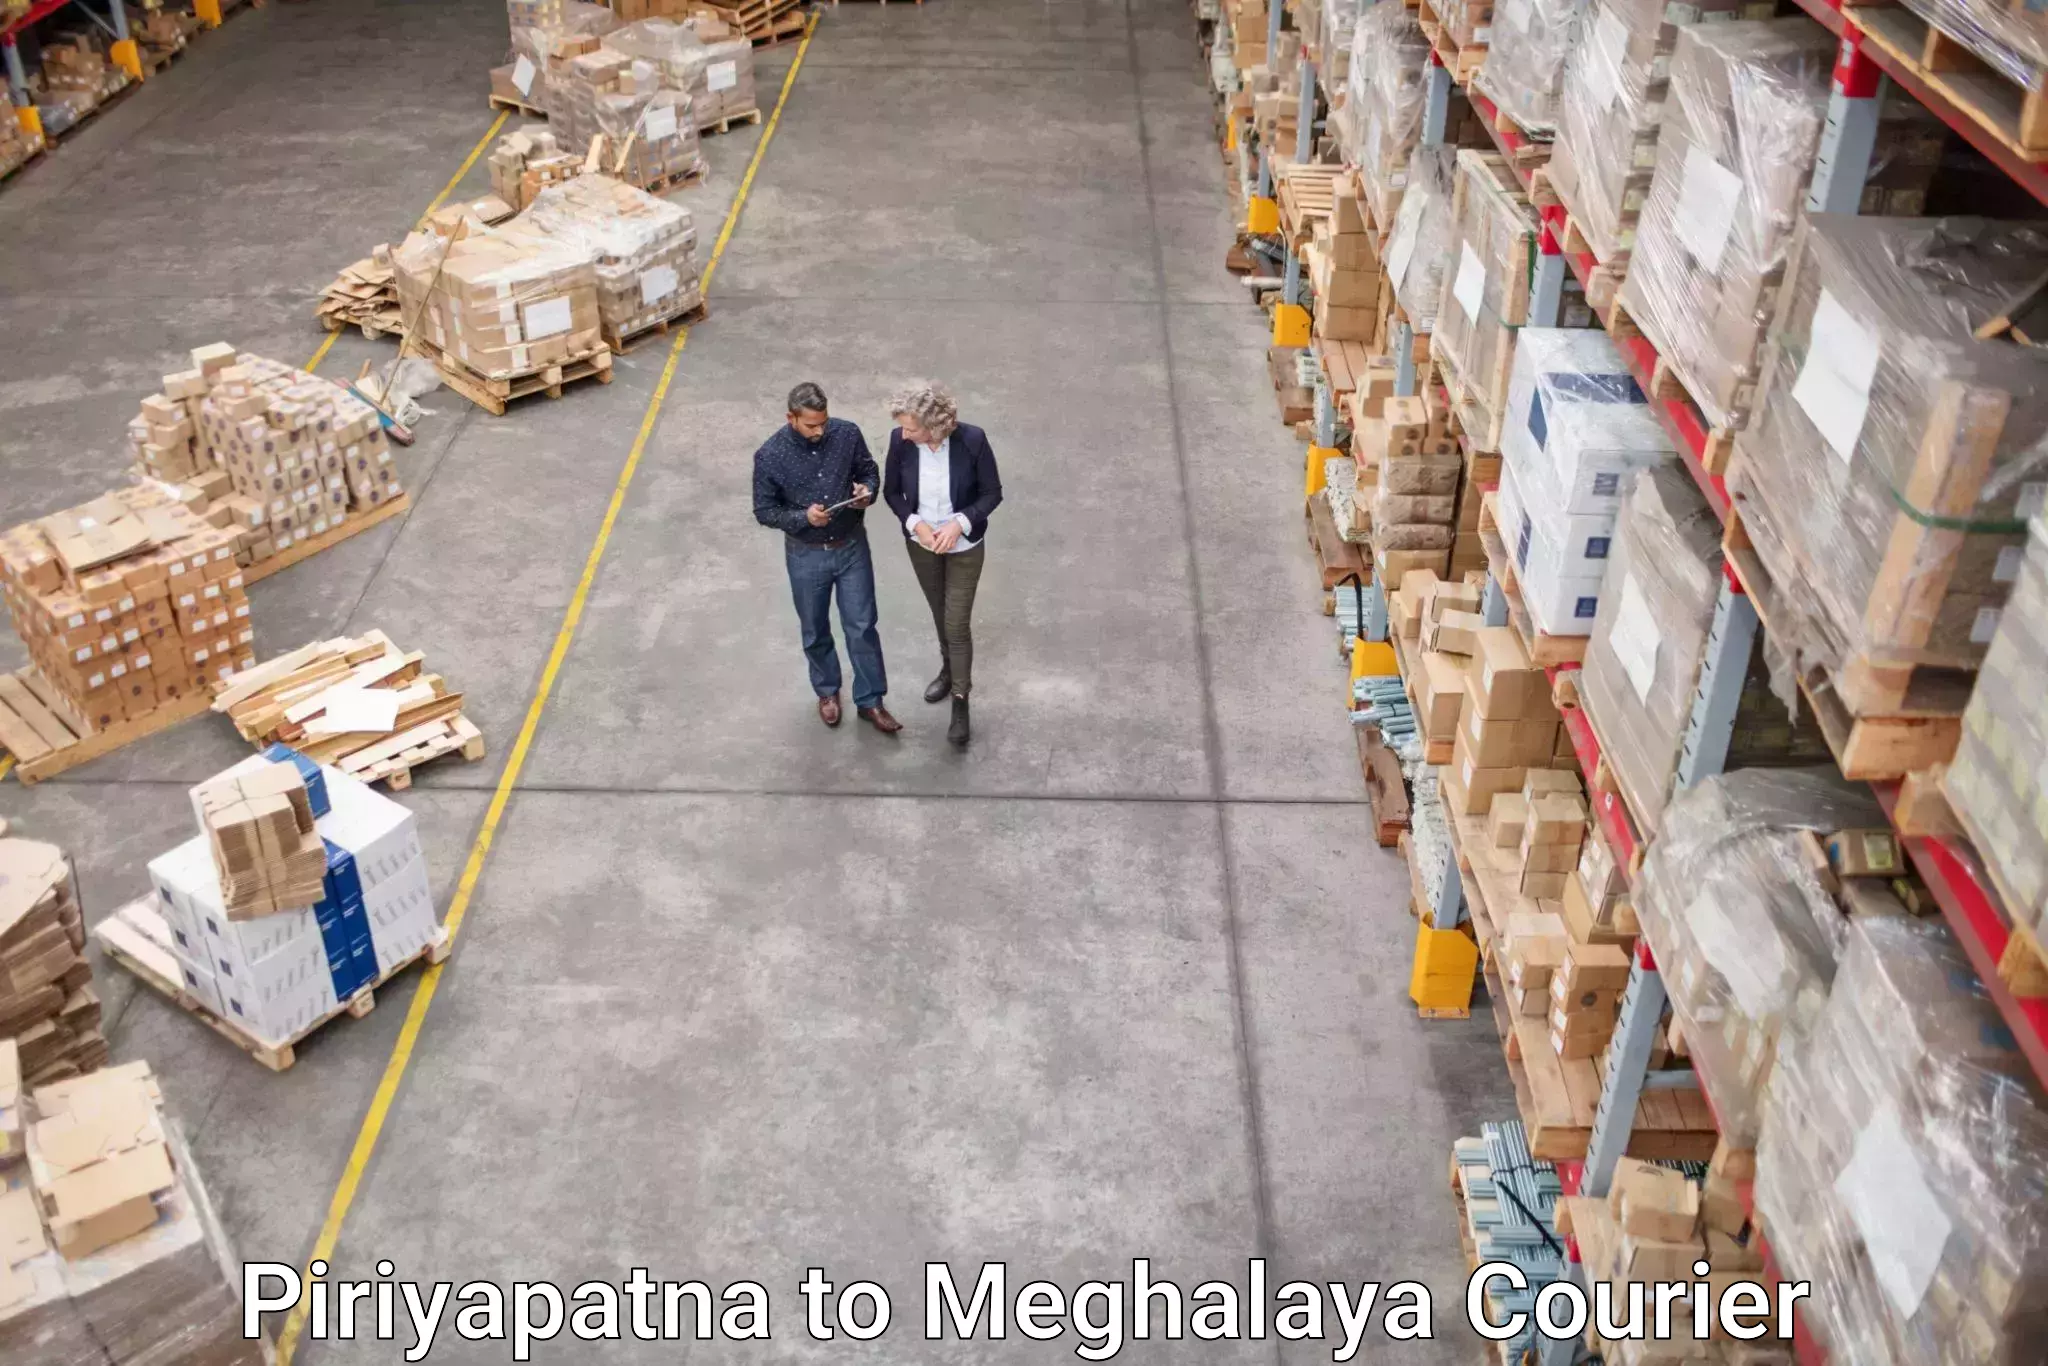 Cargo delivery service Piriyapatna to Jowai